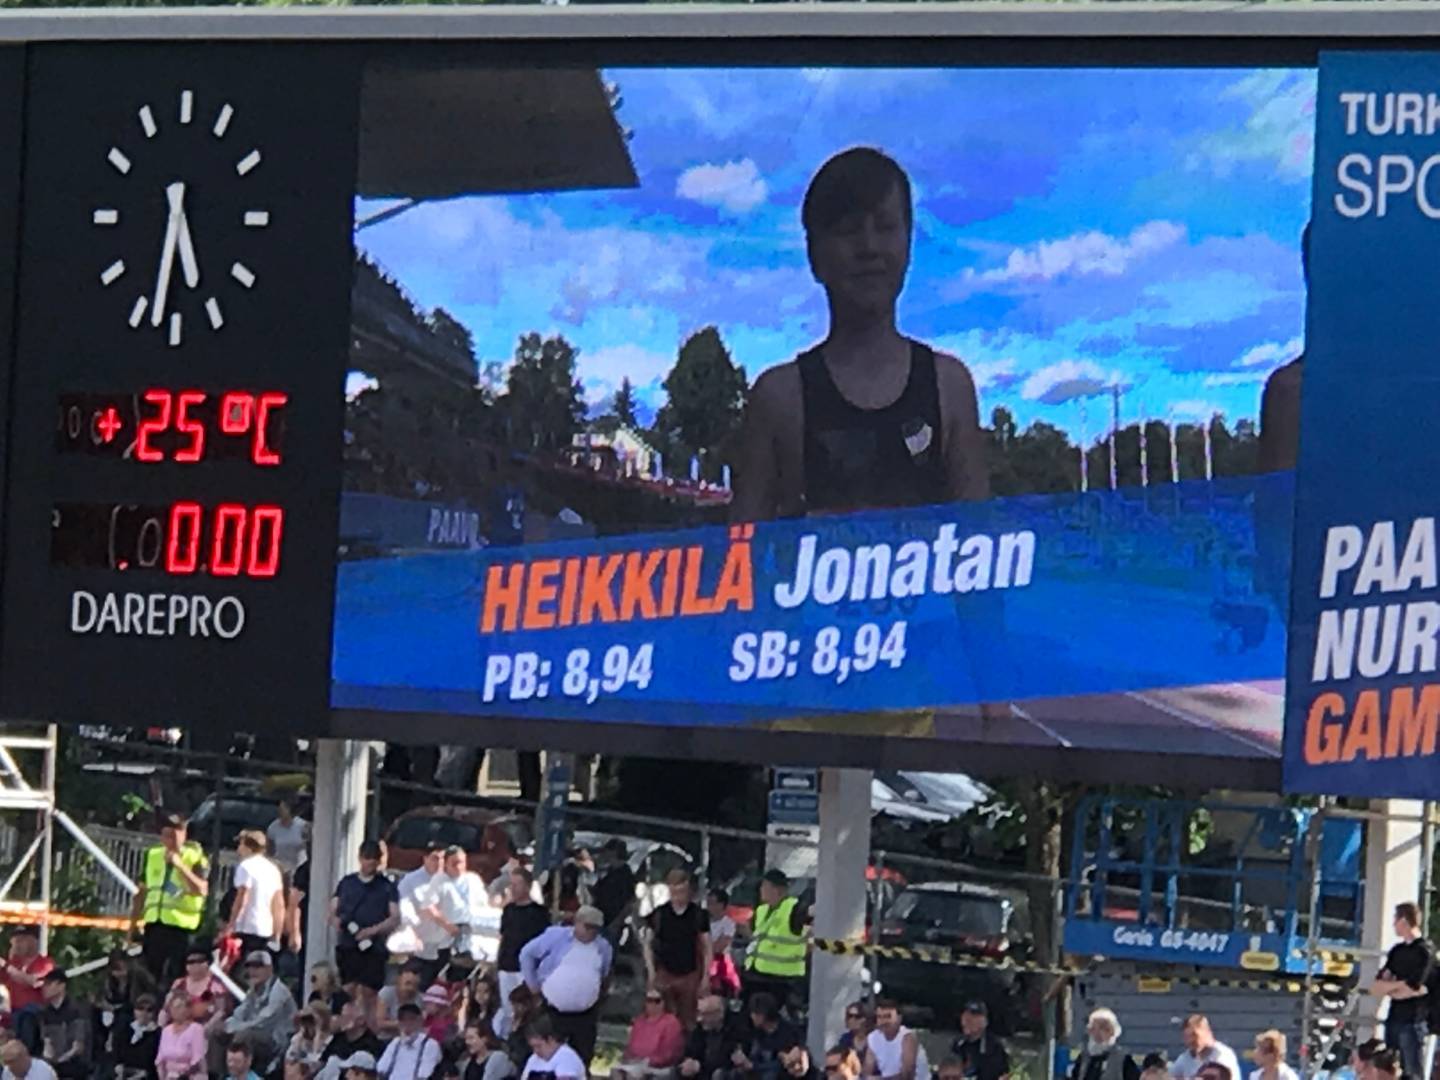 Jonathan Heikkilä rekordtid på 60 m